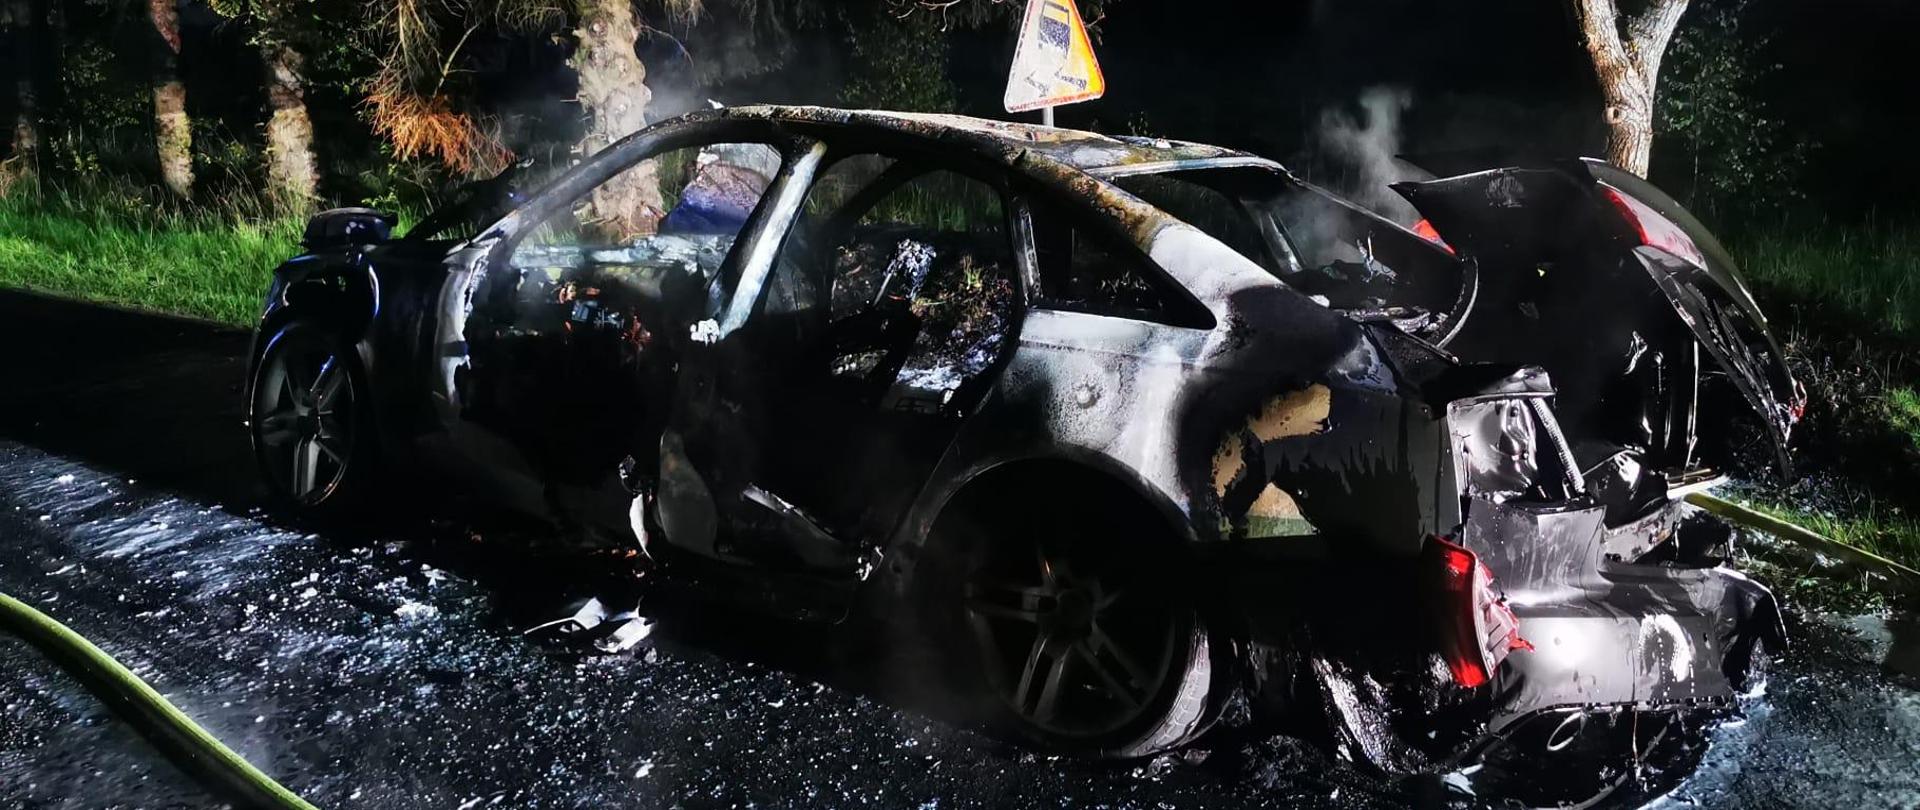 Zdjęcie przedstawia spalony wrak samochodu na drodze podczas pory nocnej.